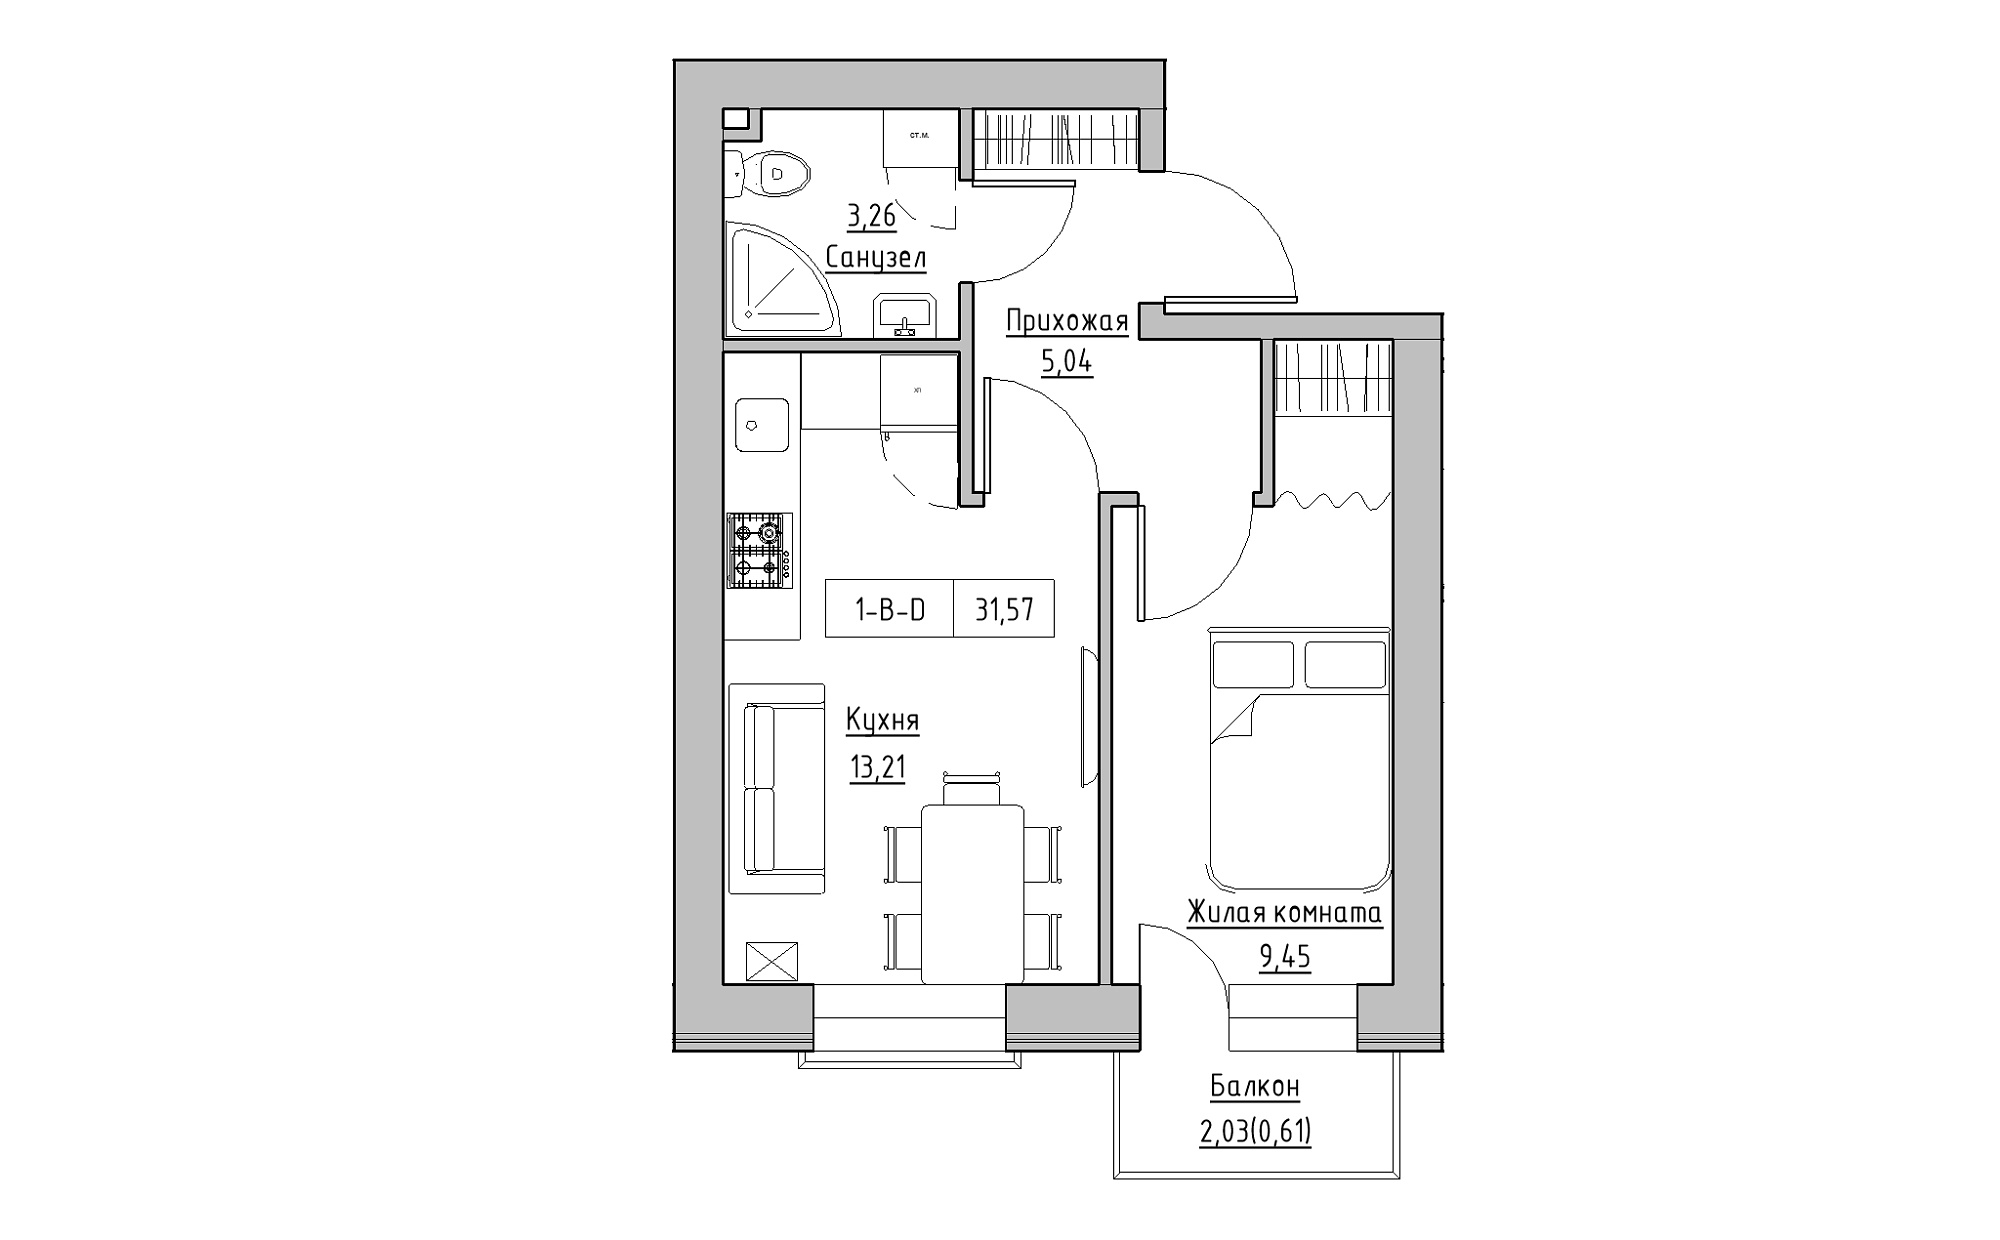 Планировка 1-к квартира площей 31.57м2, KS-022-05/0003.